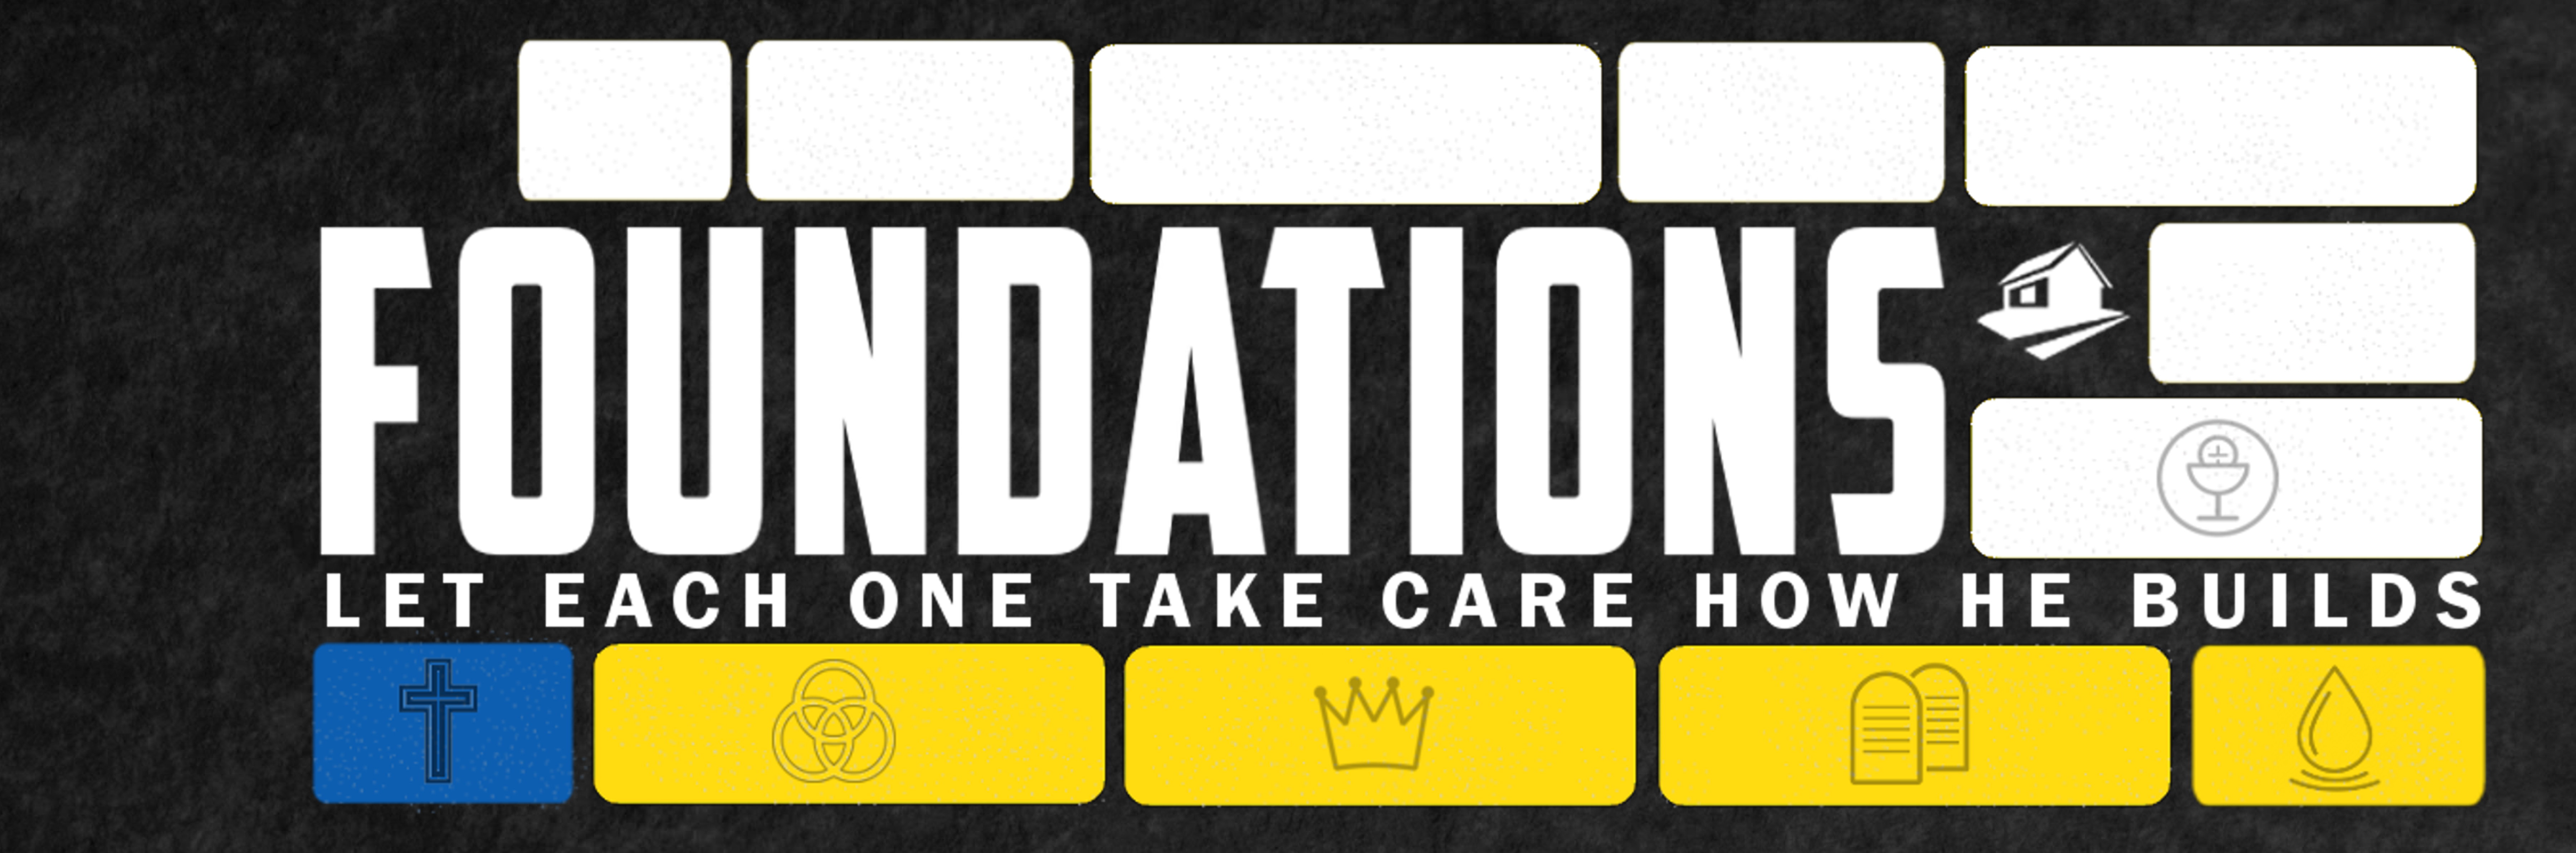 foundations-header-main